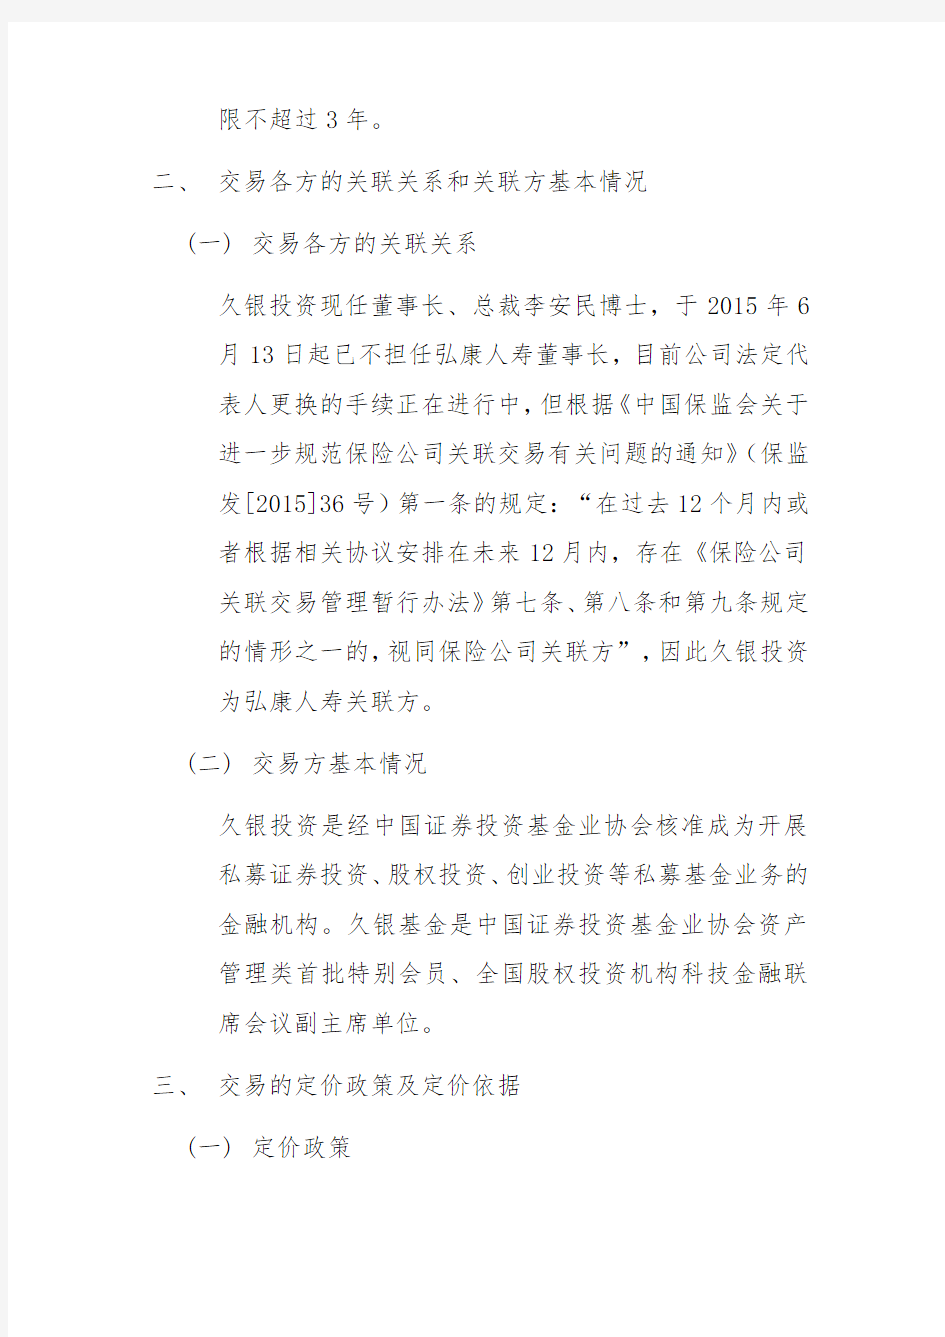 弘康人寿保险股份有限公司关于认购 “南京久富股权投资 …